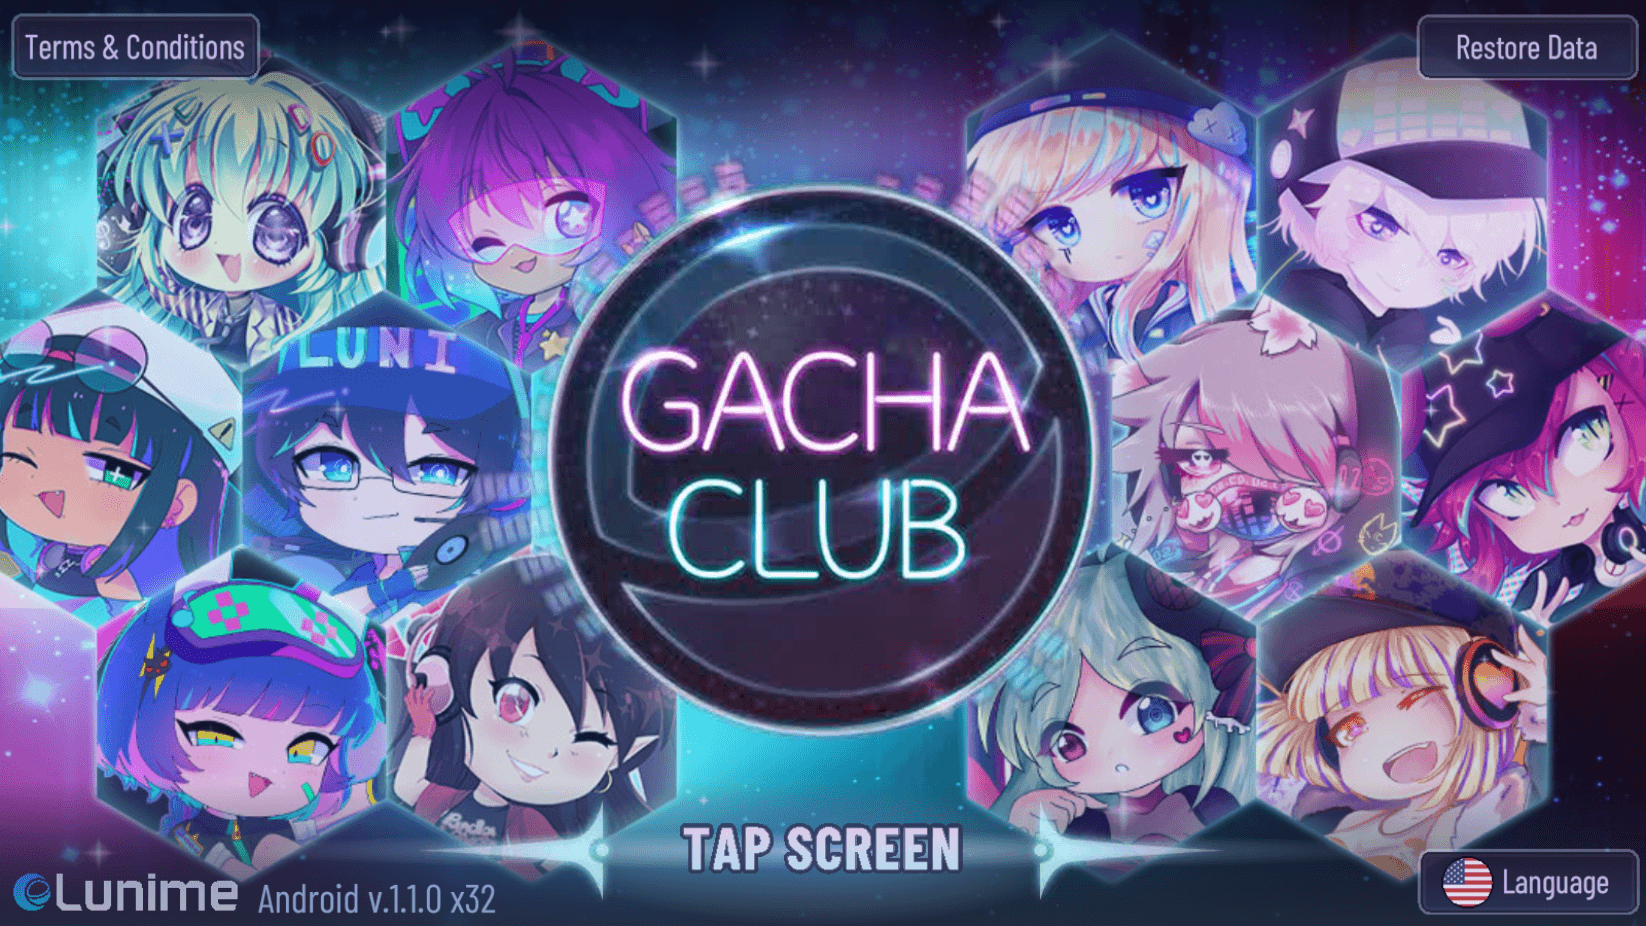 เล่น Gacha Club ได้ทุกที่ด้วย Now.gg InstaPlay - โซลูชันการเล่นเกมบนคลาวด์ของคุณ